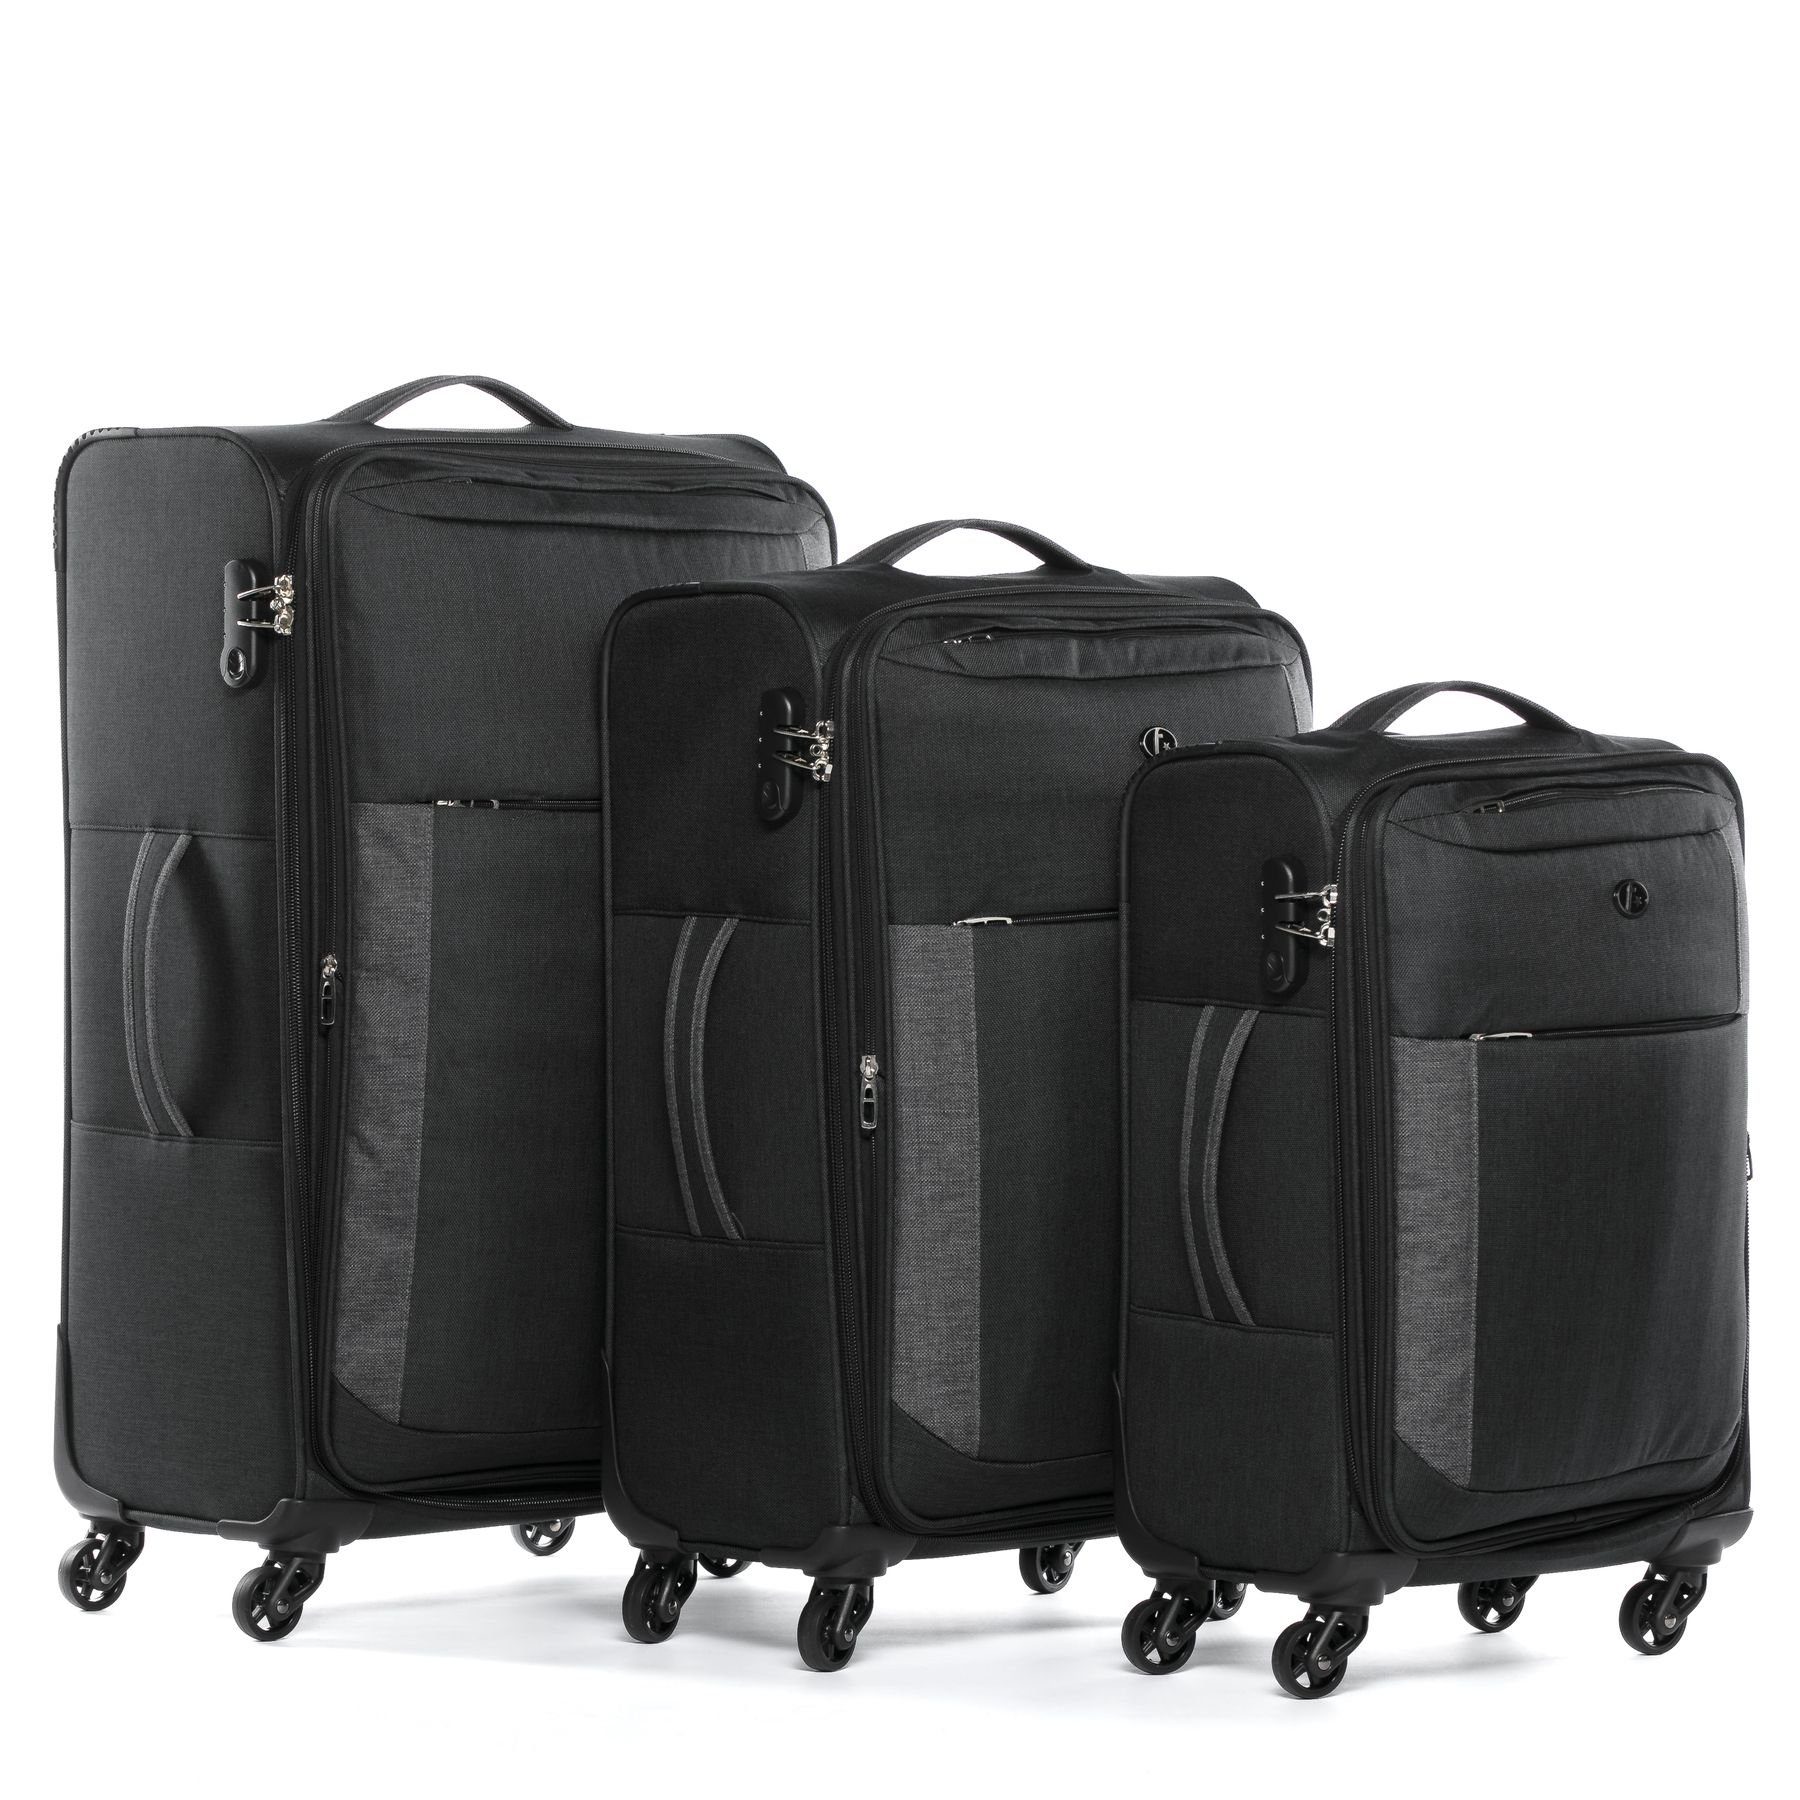 4 3er teilig Koffer Kofferset Rollkoffer Reisekoffer Saint-Tropez, Premium Set, 3 FERGÉ Trolley Weichschale erweiterbar Rollen,